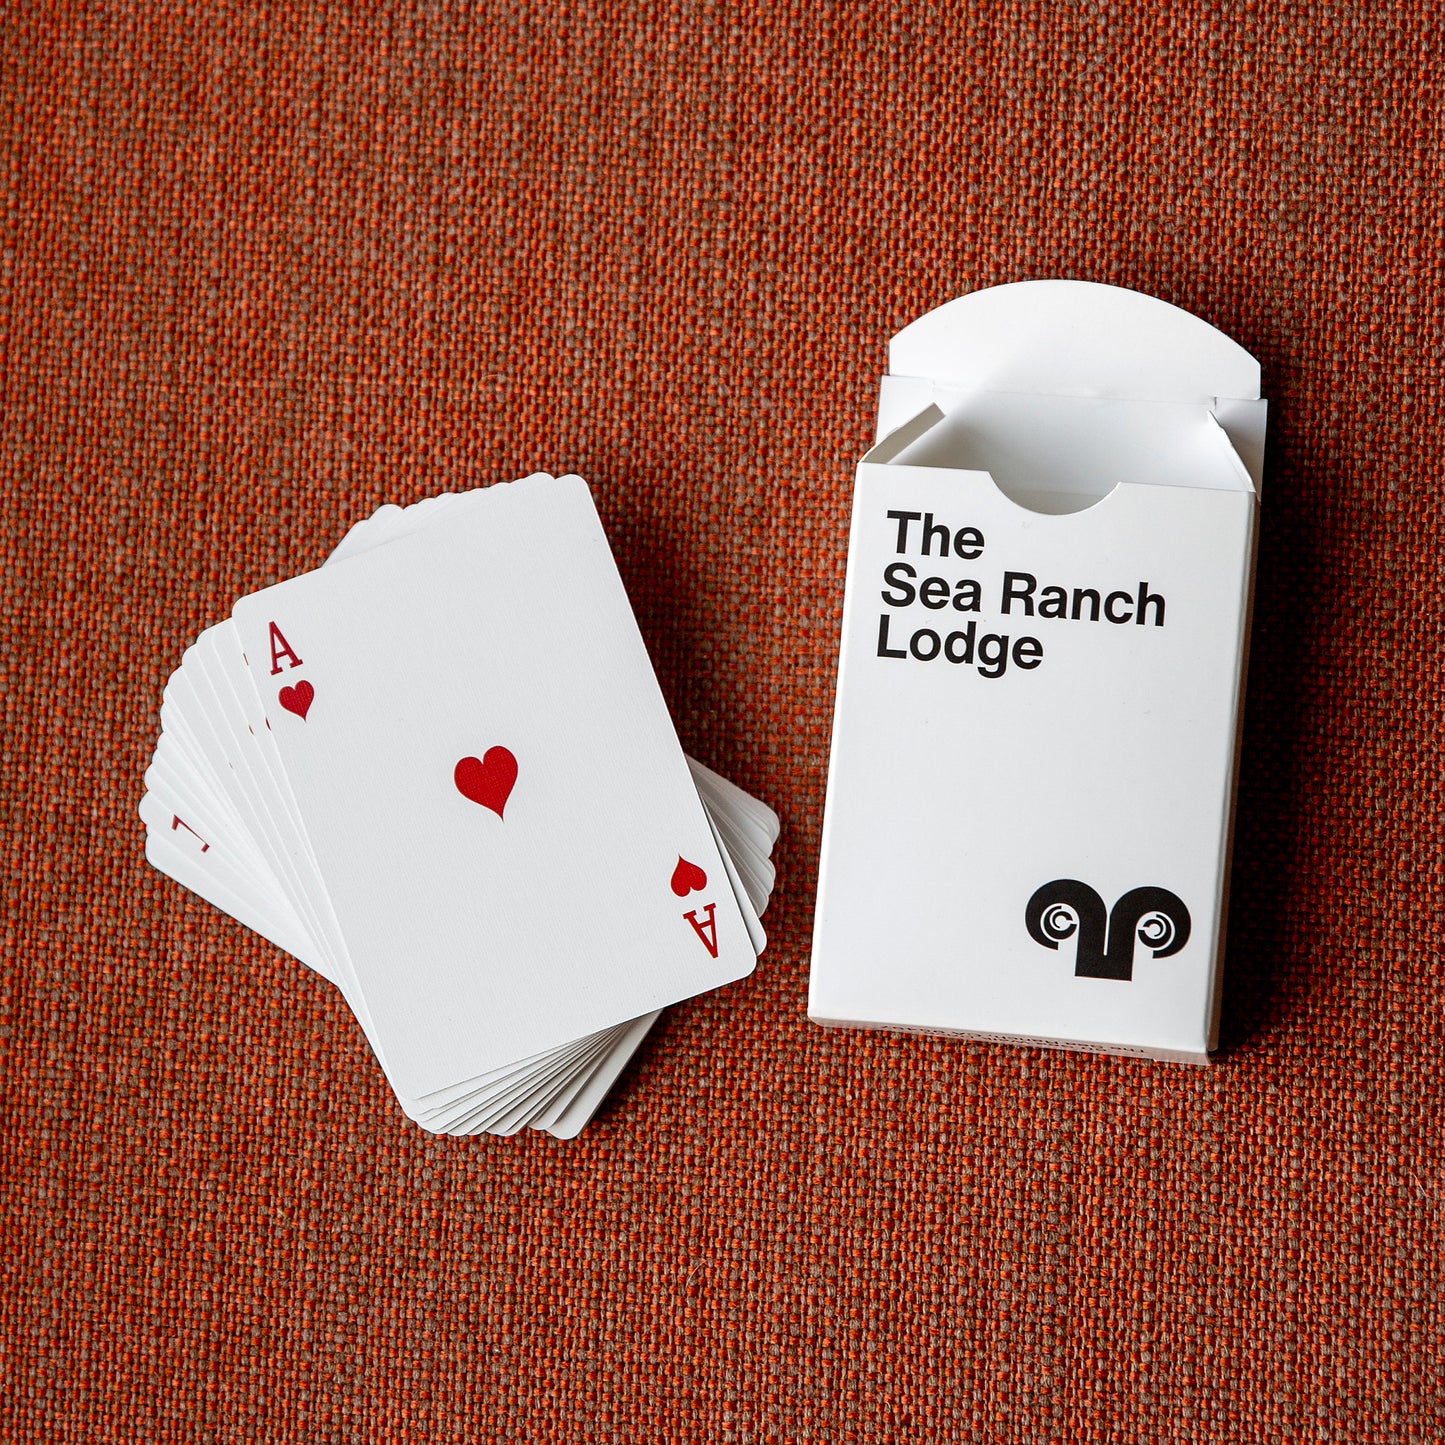 Logo Playing Cards